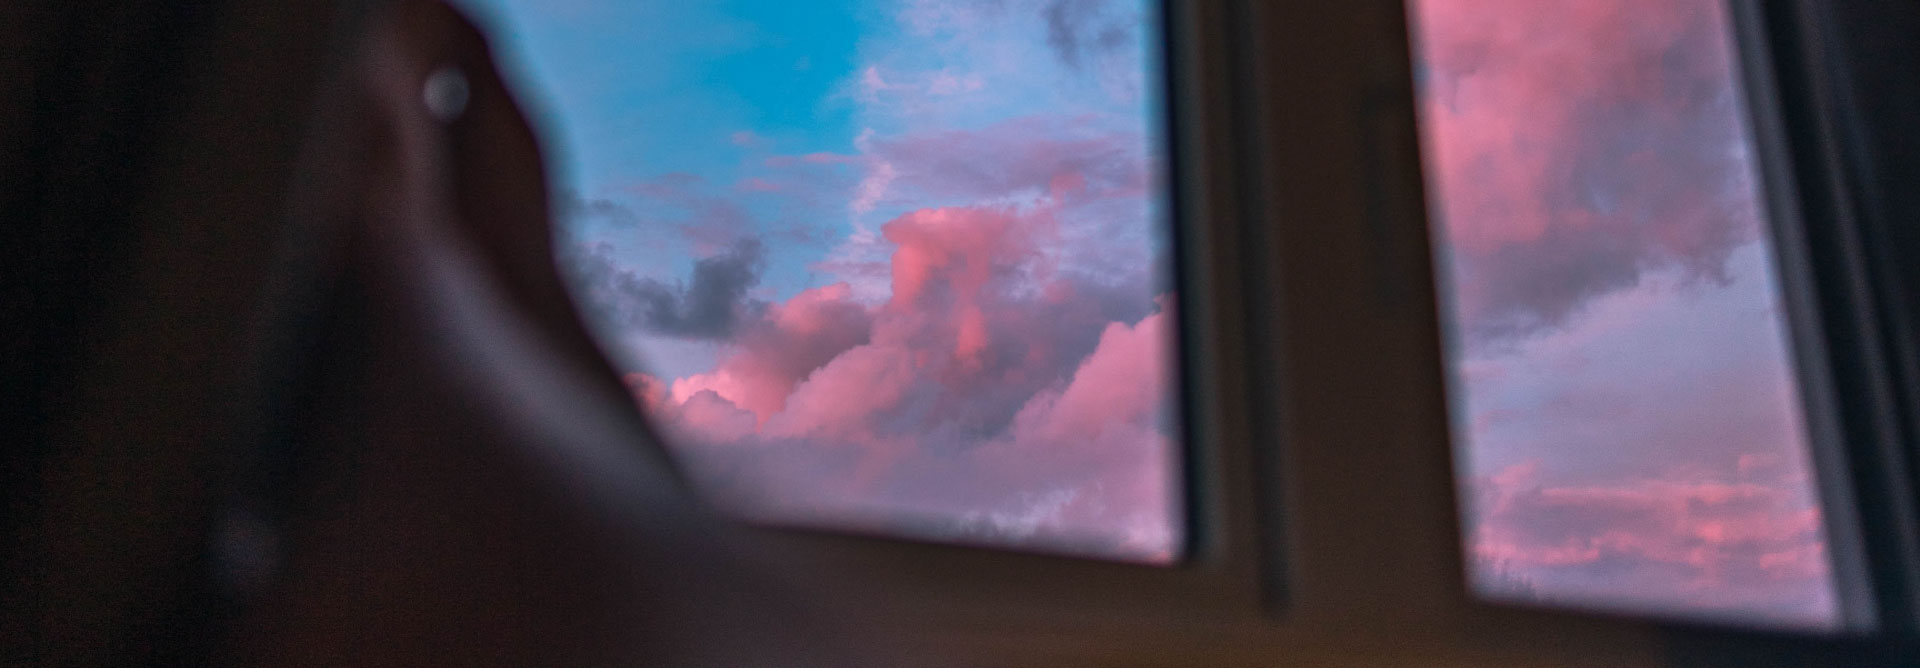 Impressionsbild mit Fensteraussicht auf einen bewölkten Himmel in der Dämmerung